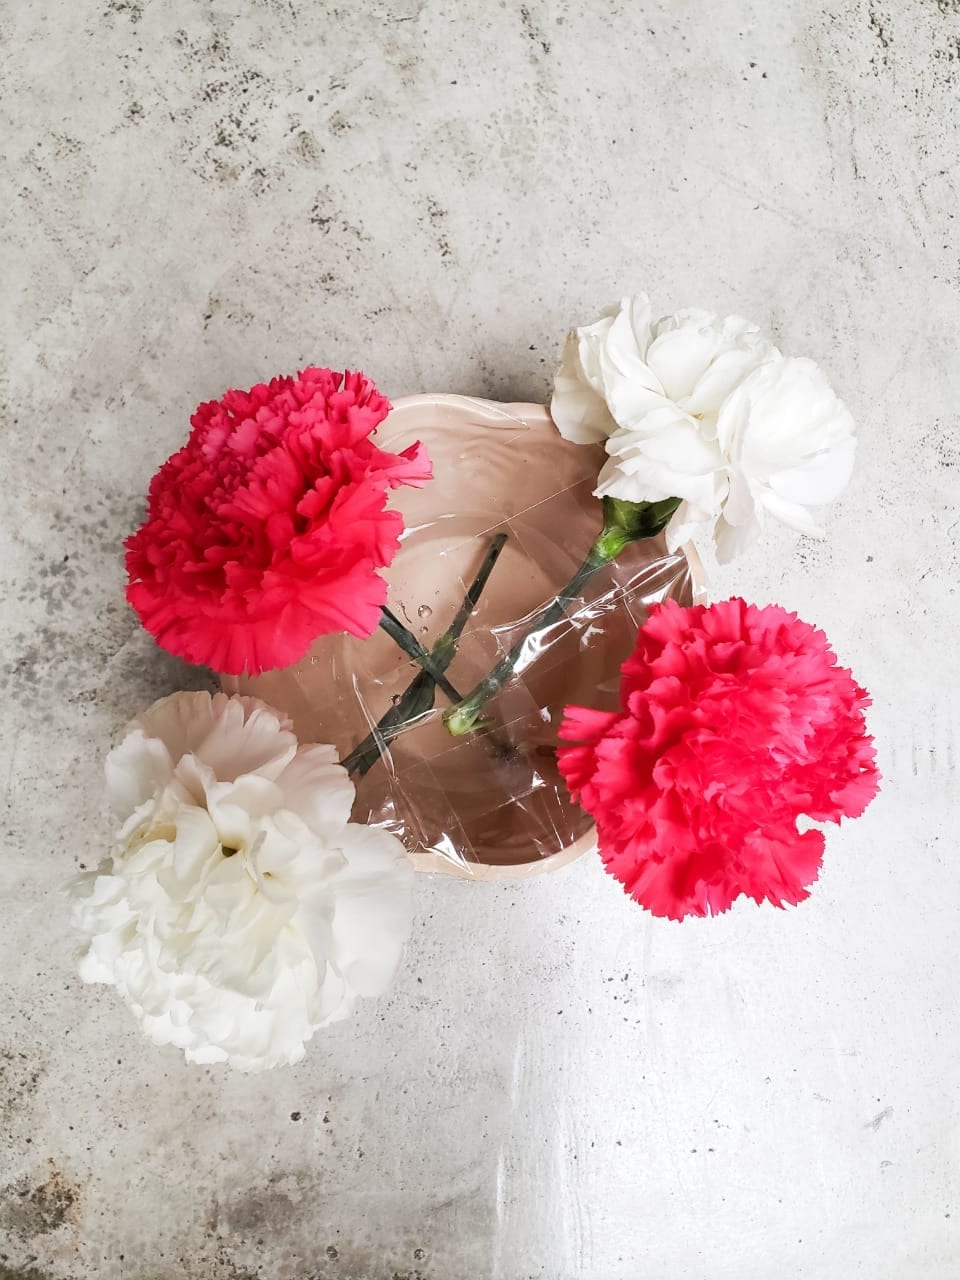 Mesa posta - como montar um vaso de flor fácil e simples